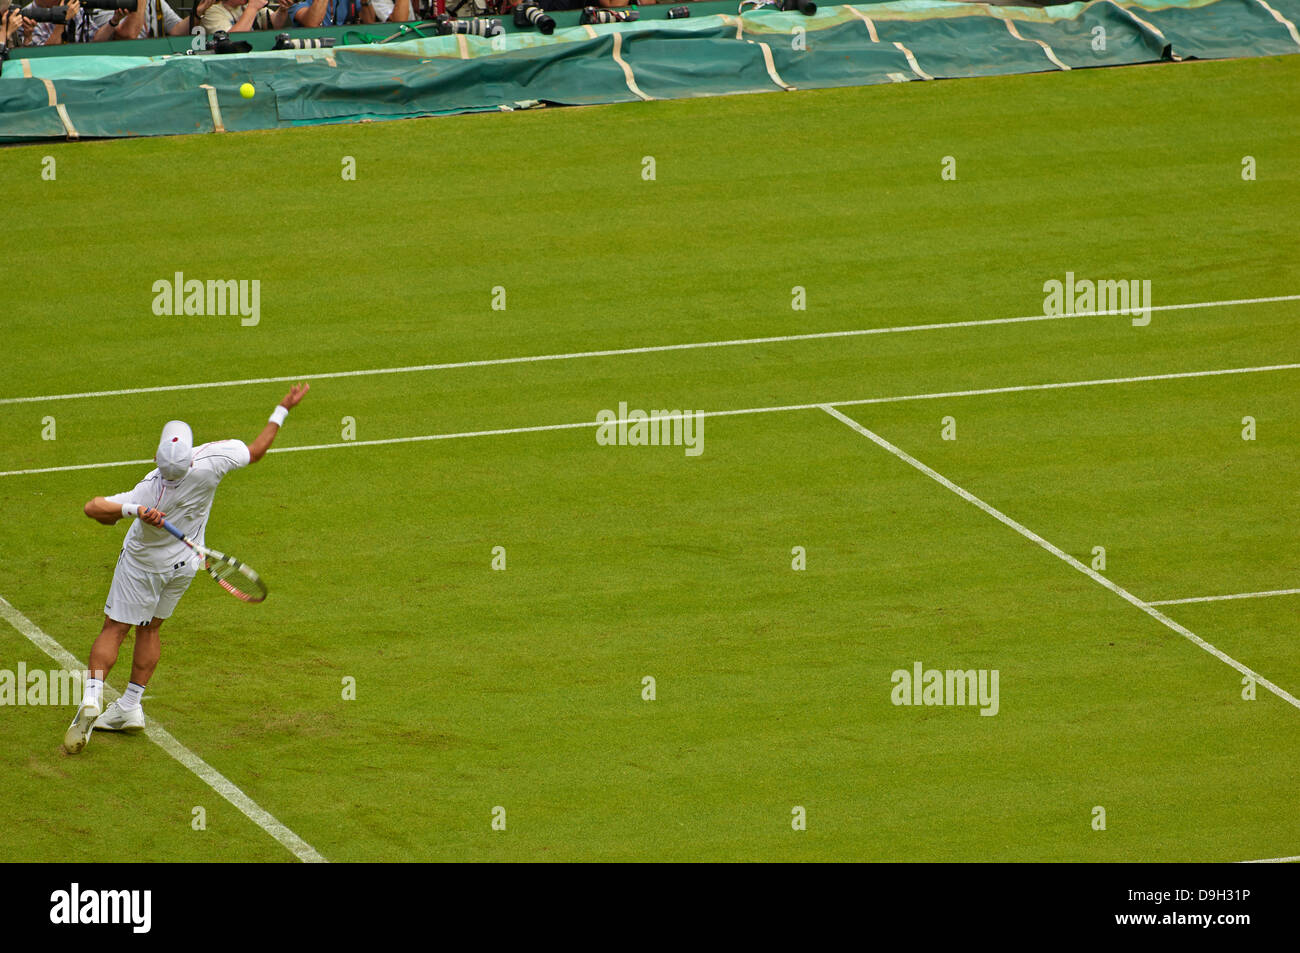 Joueur de tennis de championnat servant sur le Court Central au Wimbledon Lawn Tennis Championship Tournament Banque D'Images